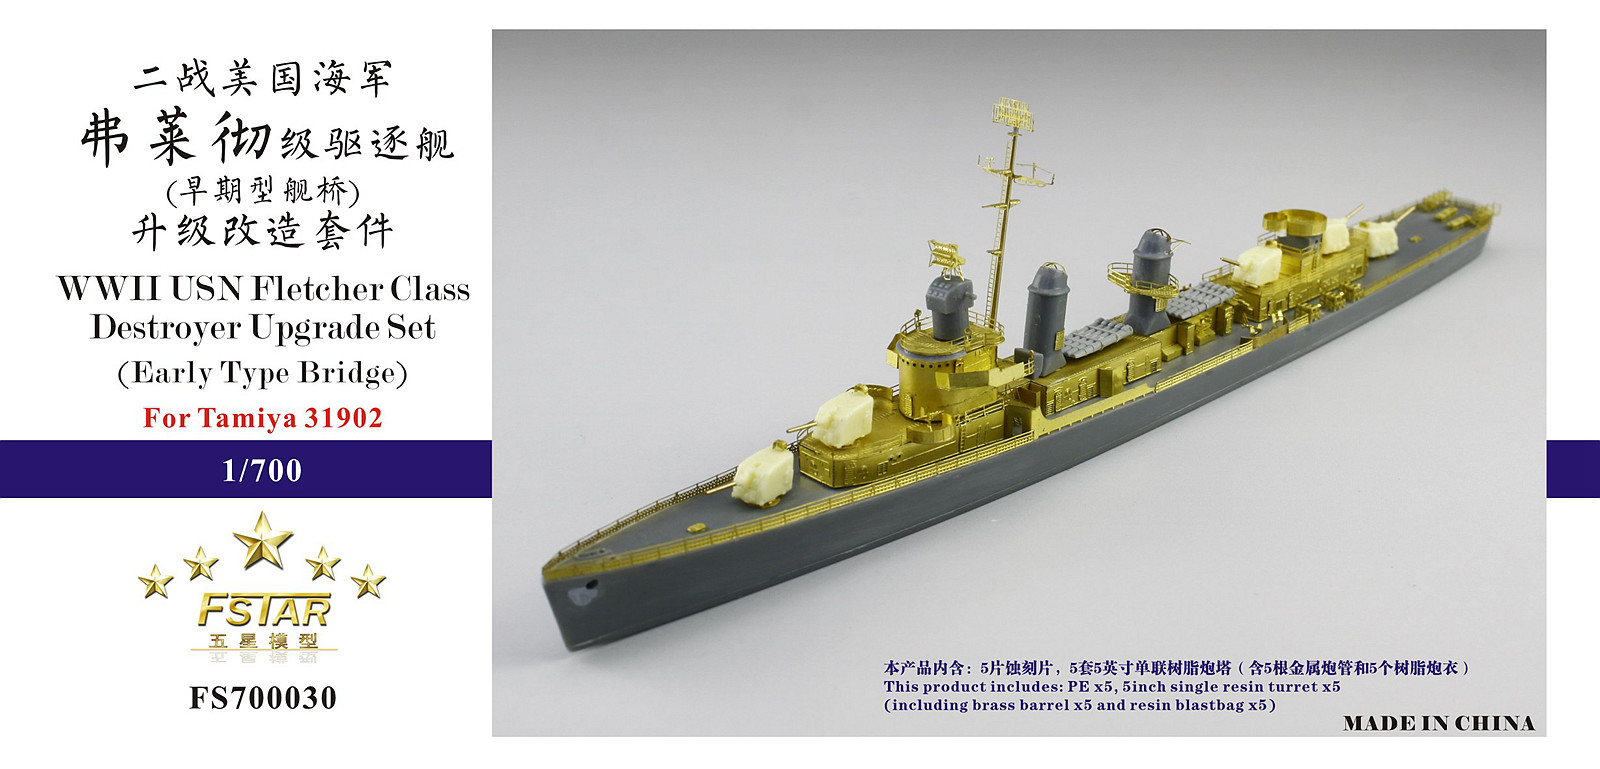 1/700 二战美国海军弗莱彻级驱逐舰(早期型舰桥)升级改造套件(配田宫31902)